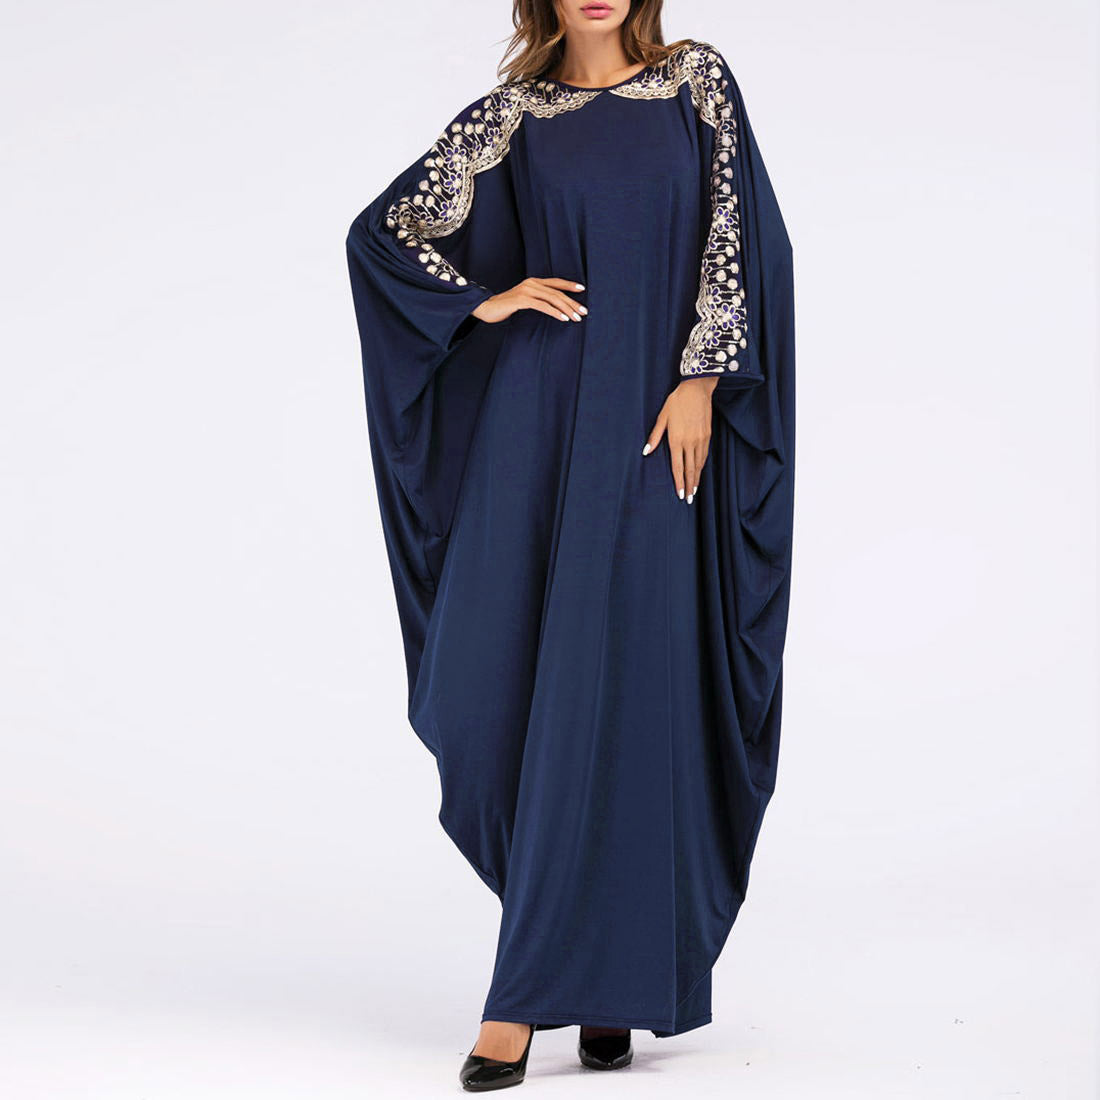 Rochie in stil musulman pentru femei, cu maneca liliac si imprimeu, marime mare, rochie lunga